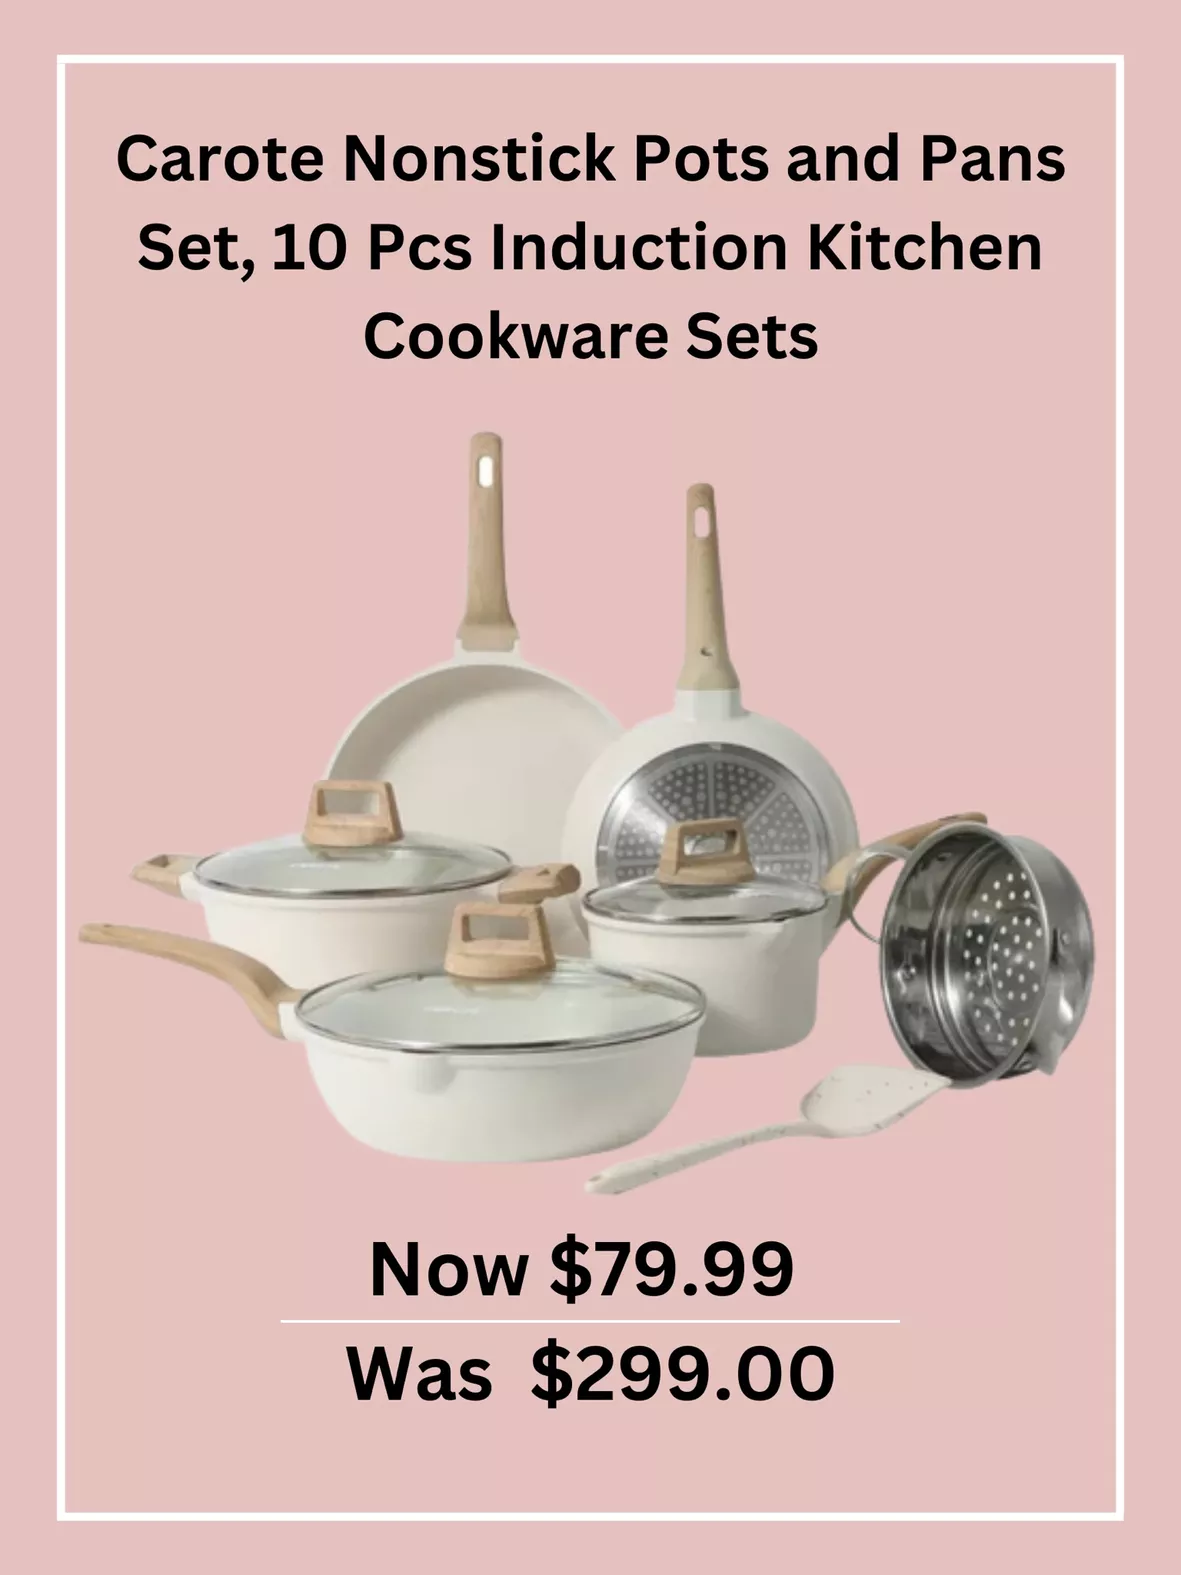  CAROTE 10 PCS Nonstick Pots and Pans Set Induction